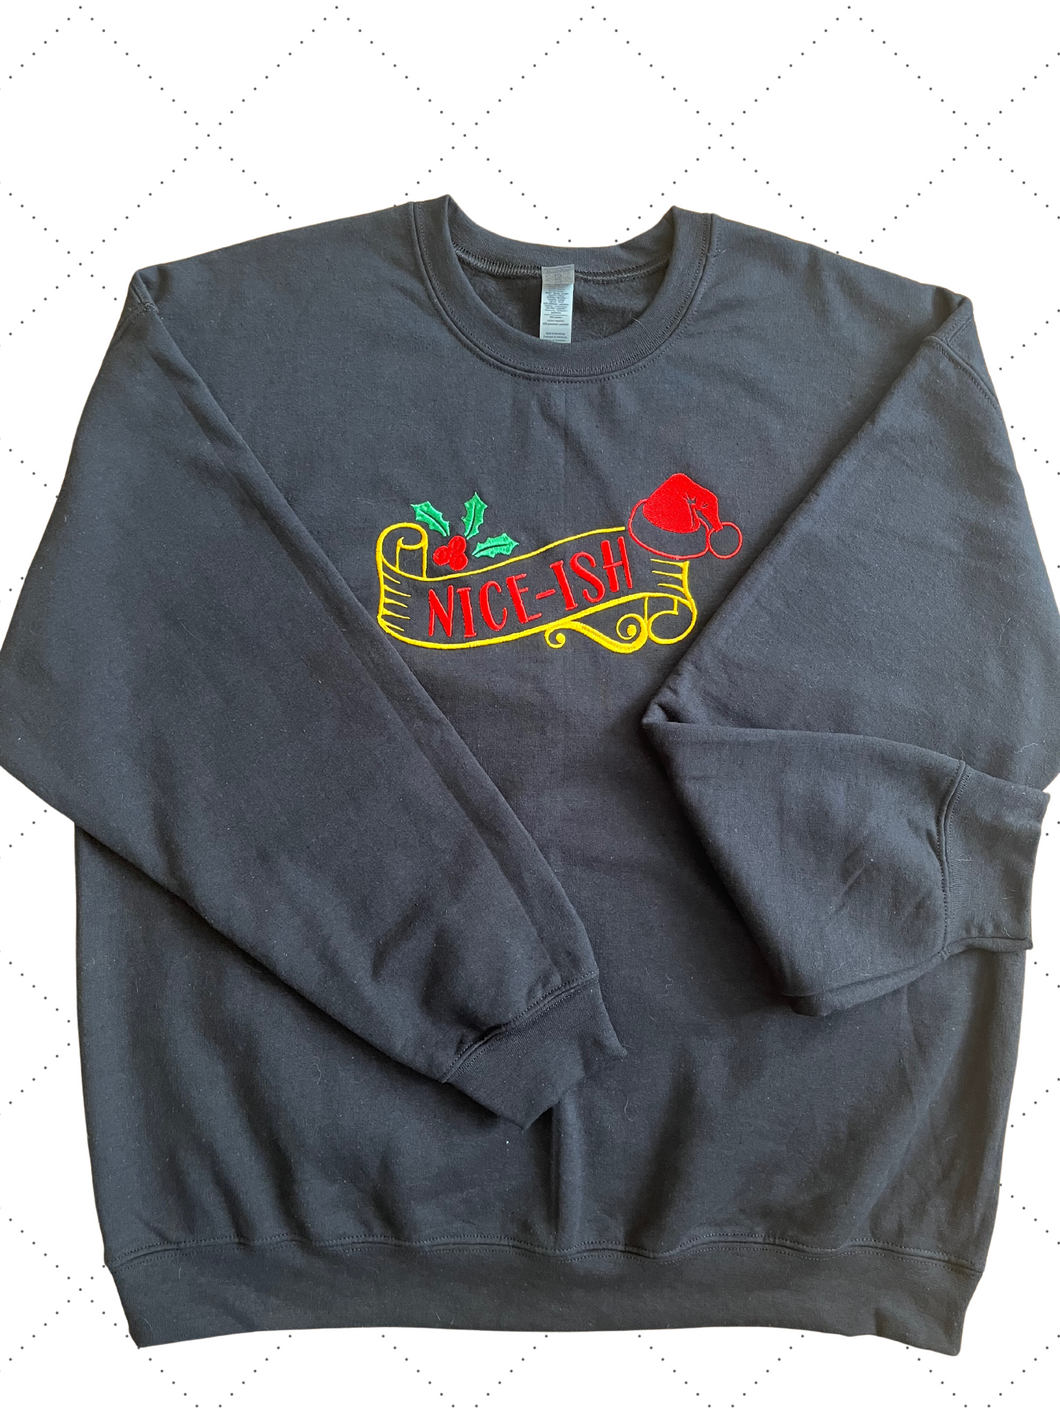 Embroidered Christmas Sweatshirt long sleeve